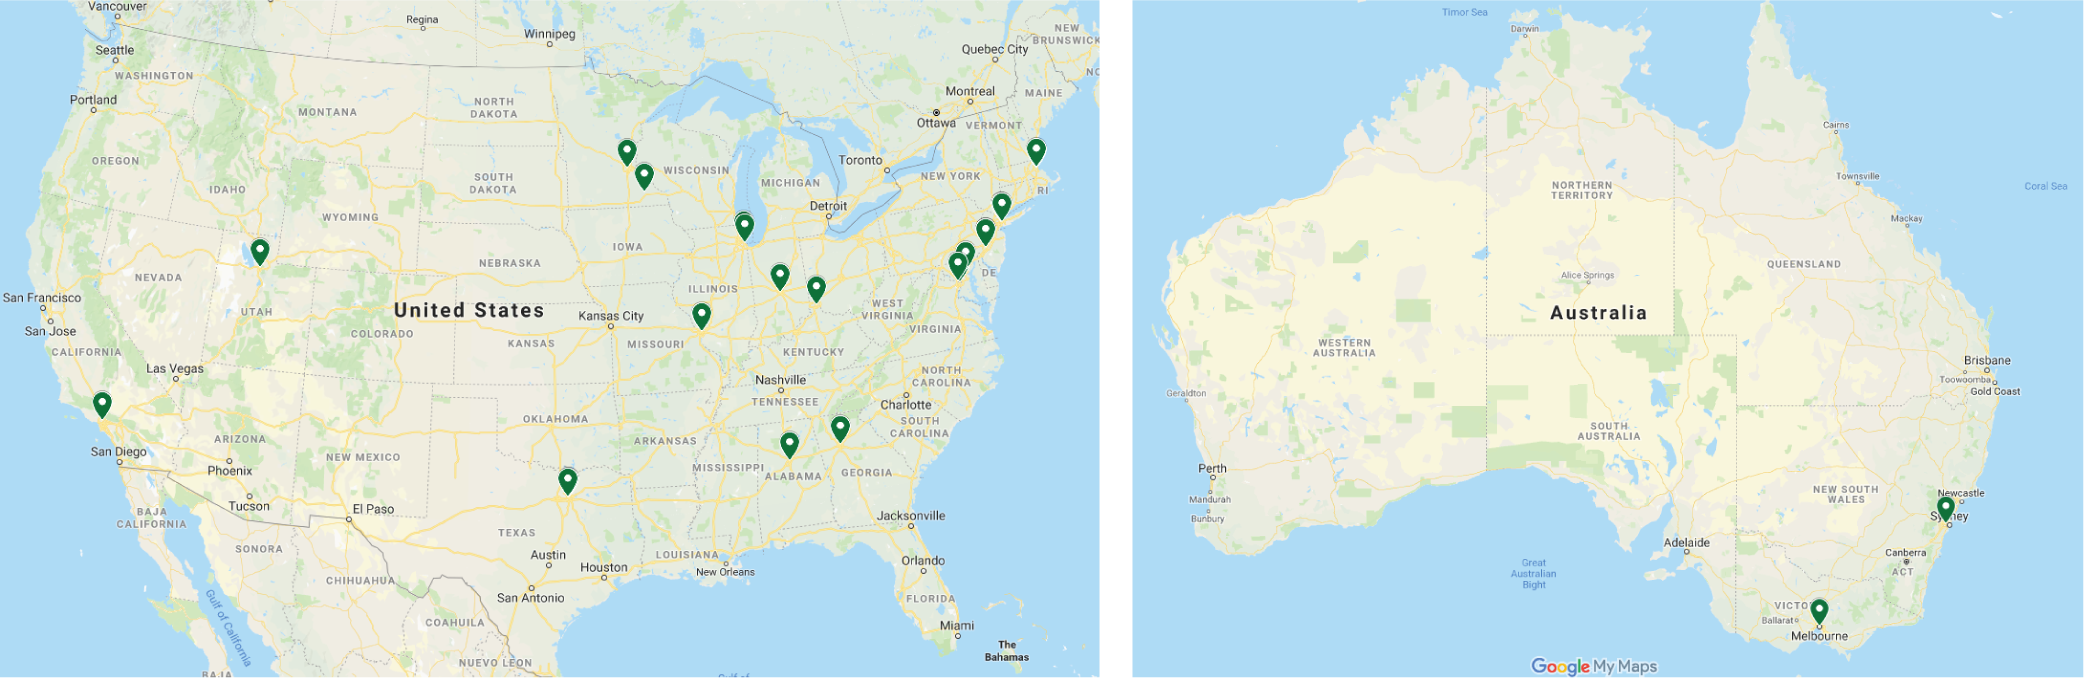 NC Consortium Site Map 6.2019